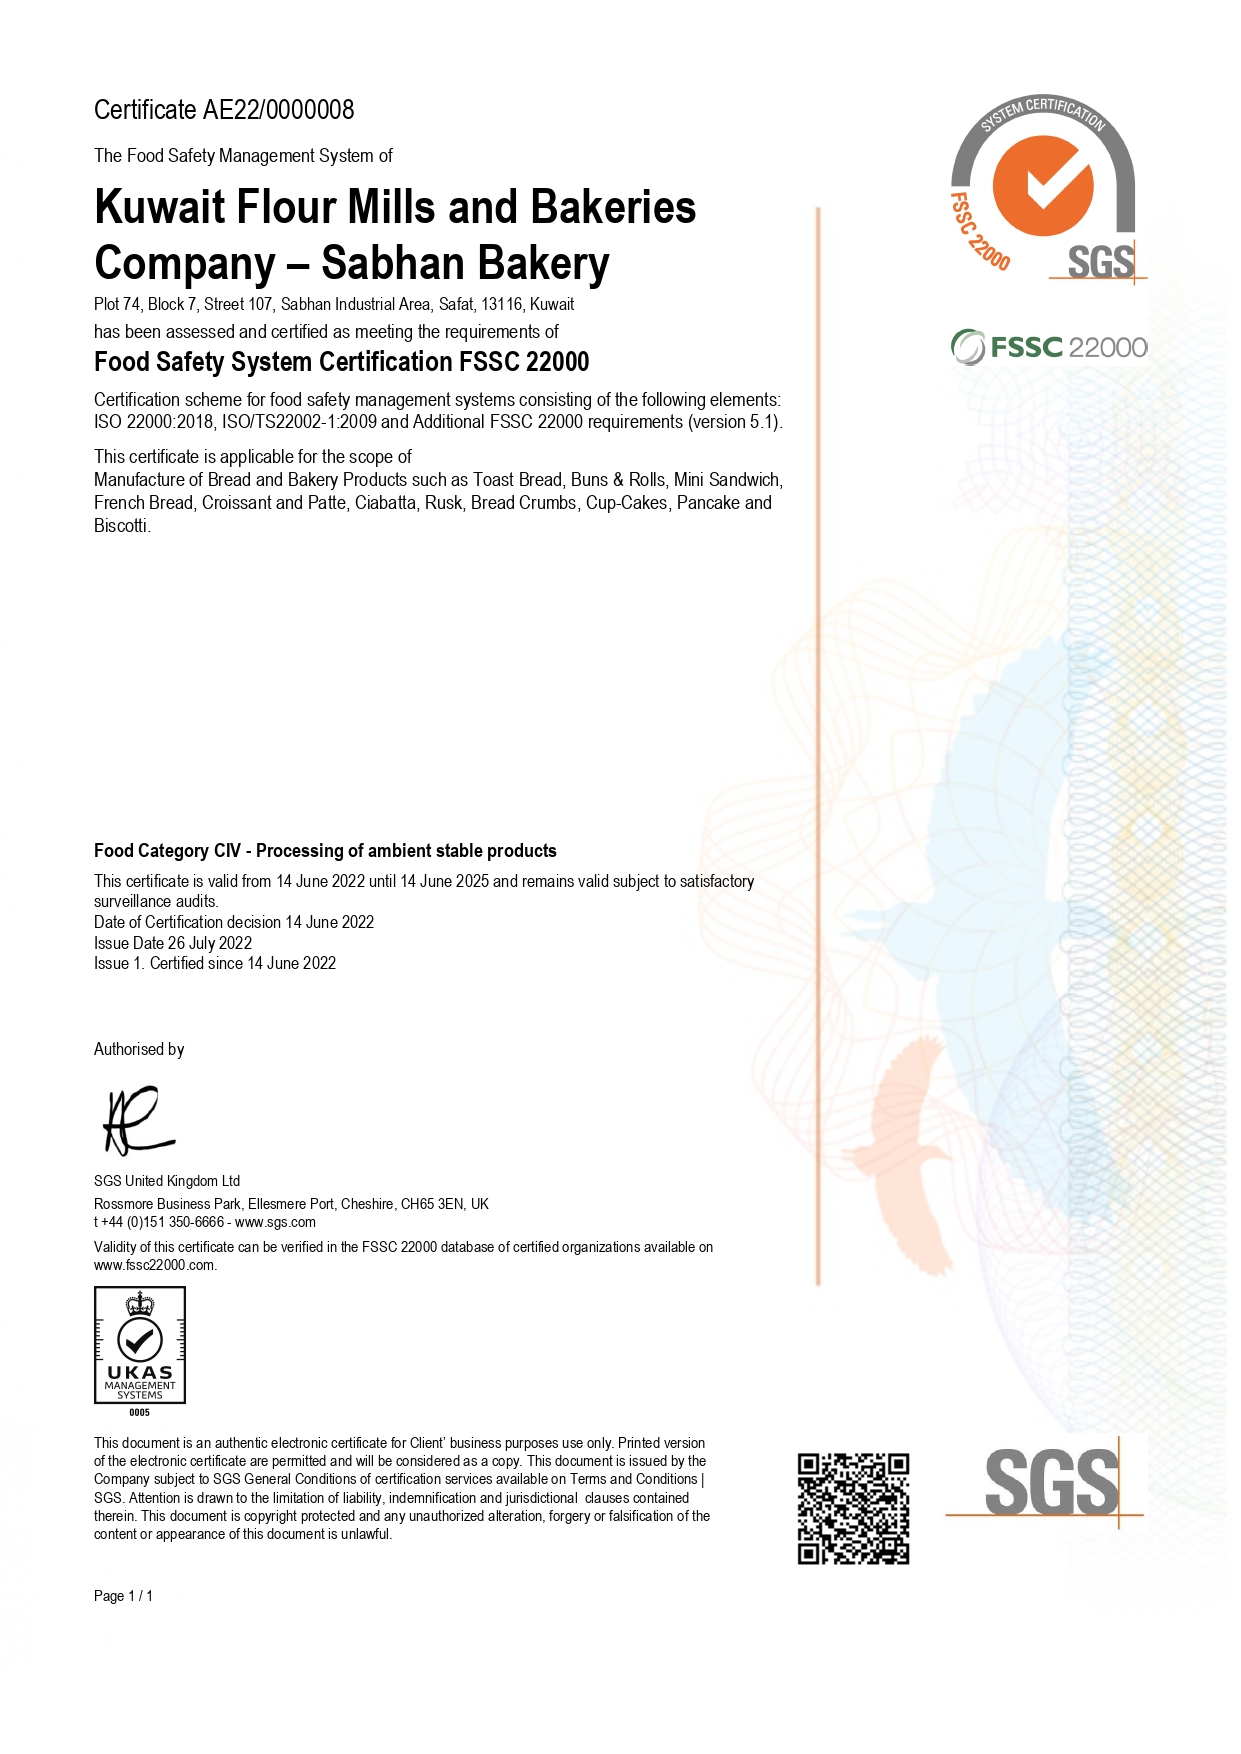 FSSC 22000_V 5_1 - certification for Sabhan_valid till 2025